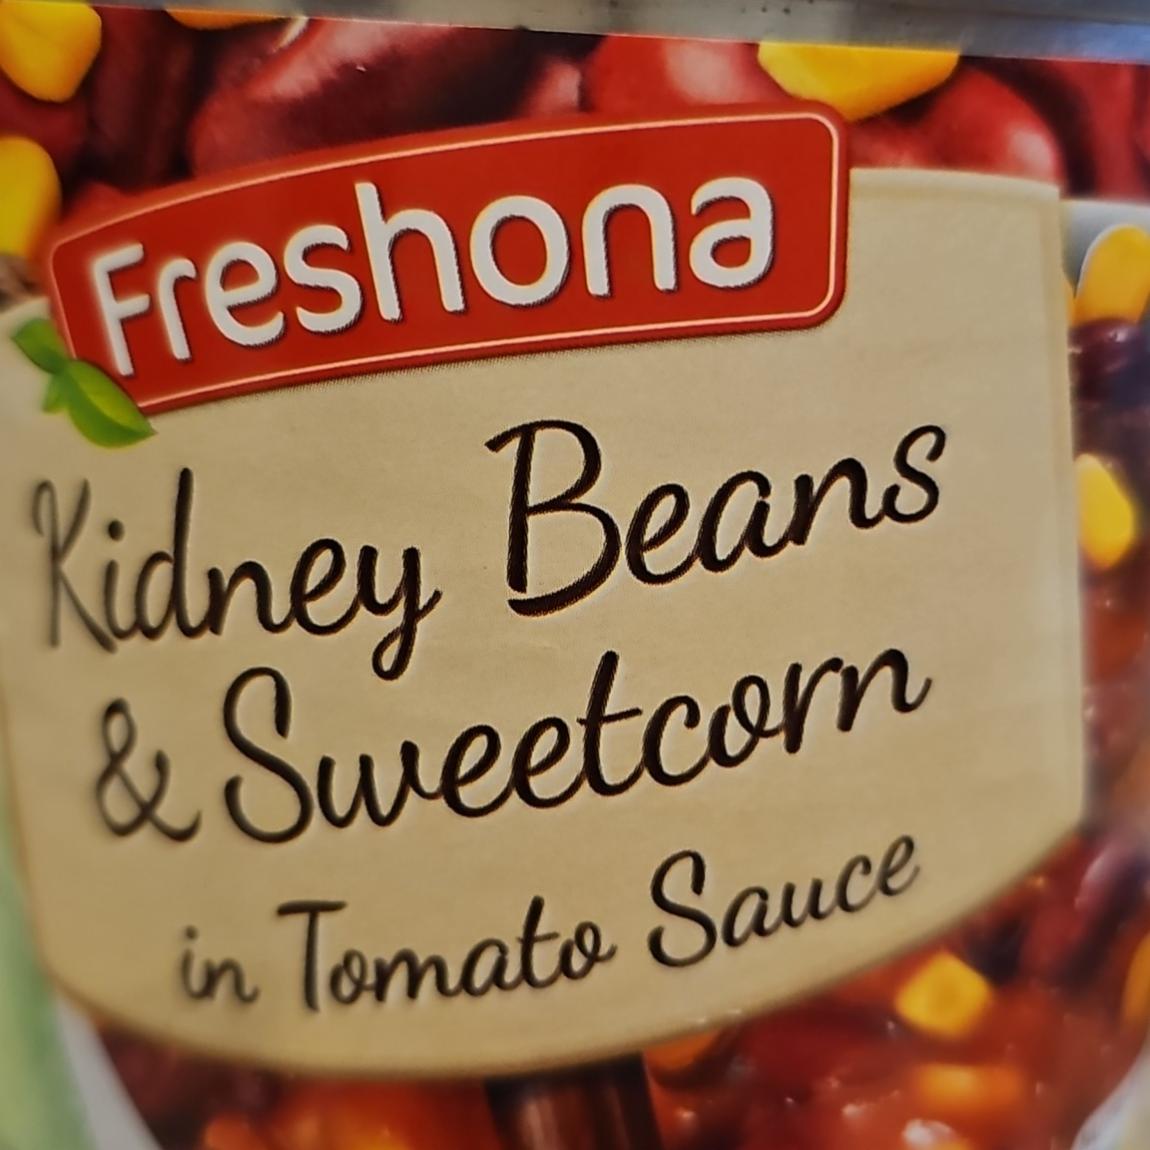 Фото - Kidney Beans & Sweetcorn in Tomato Sauce Freshona